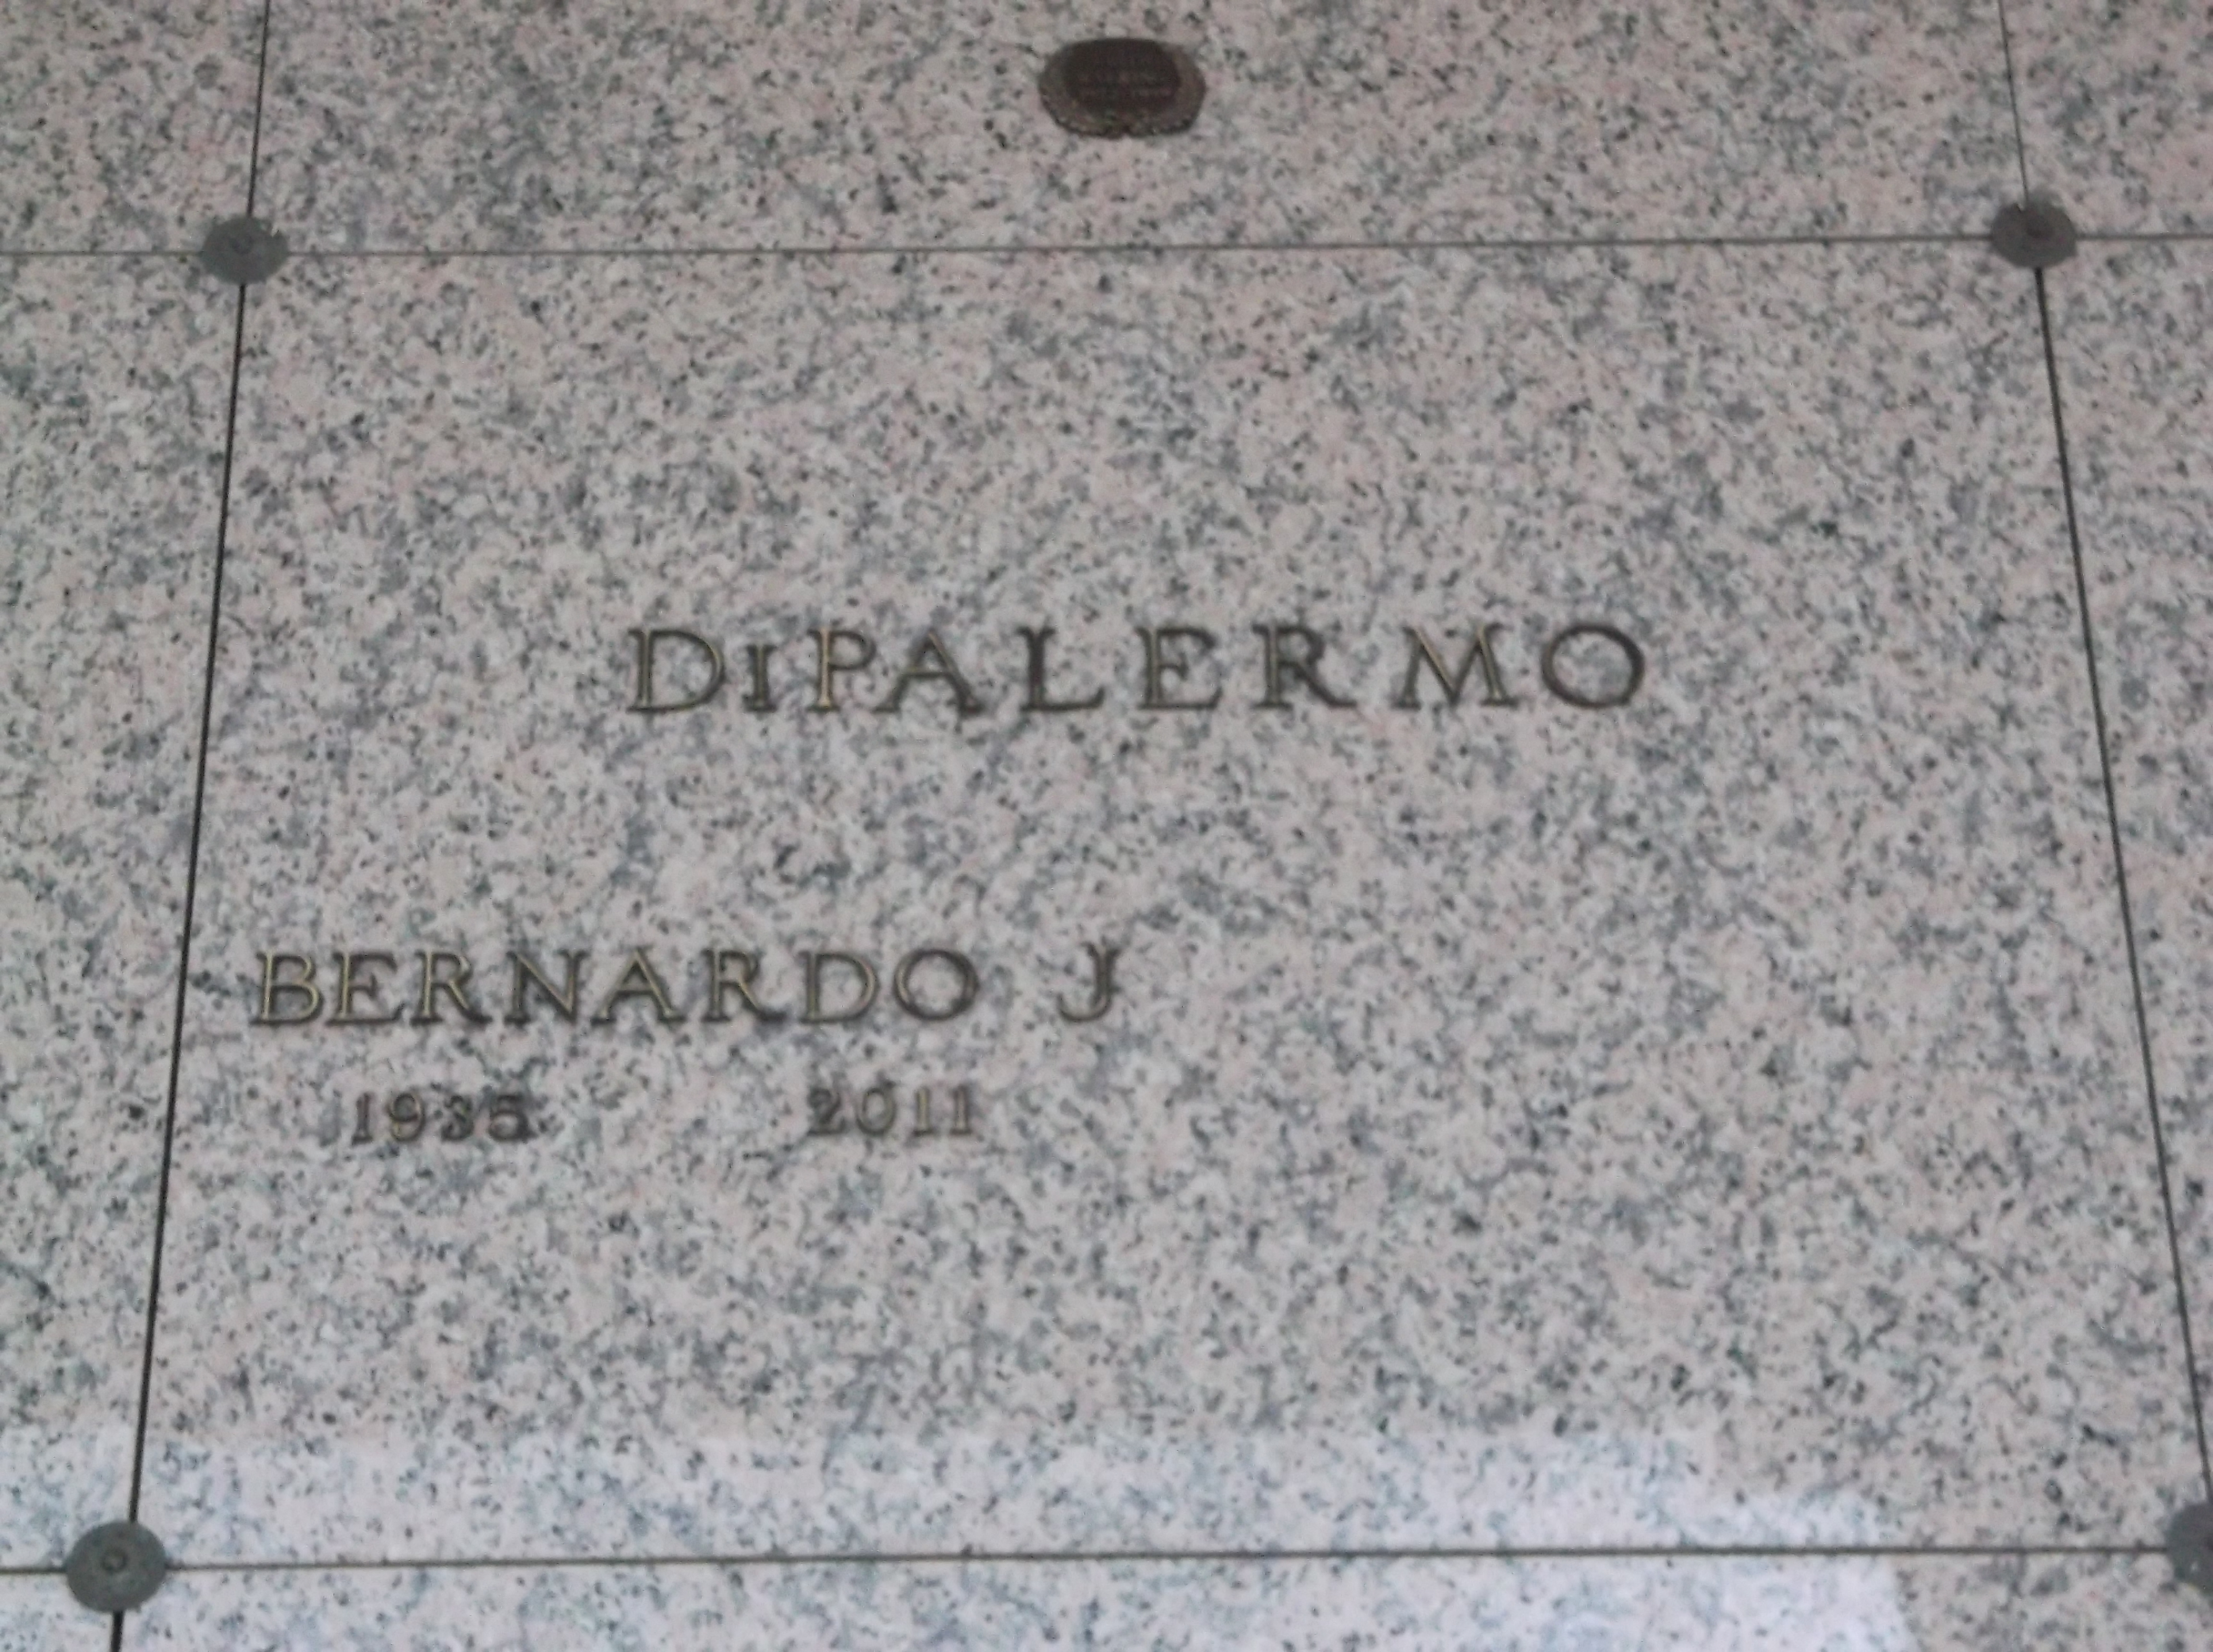 Bernardo J DiPalermo